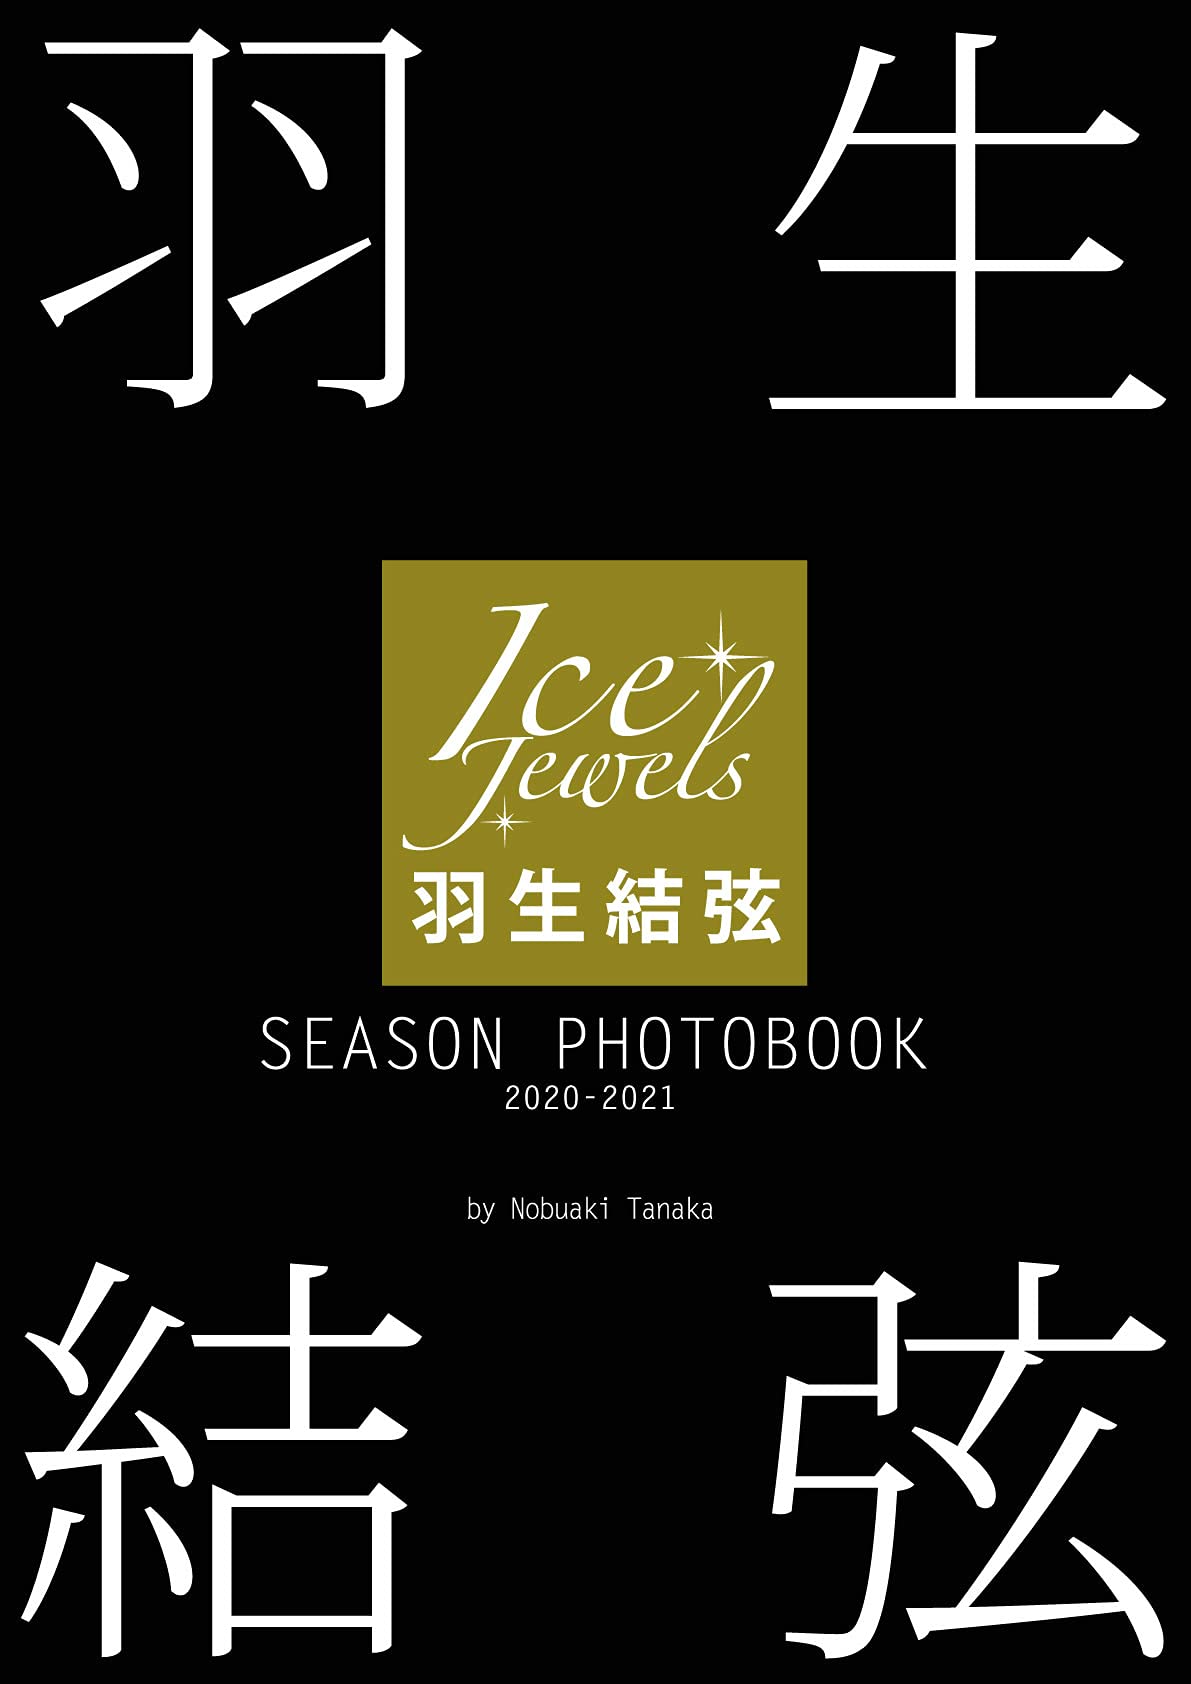 羽生結弦 SEASON PHOTOBOOK 2020-2021(Ice Jewels特別編集)